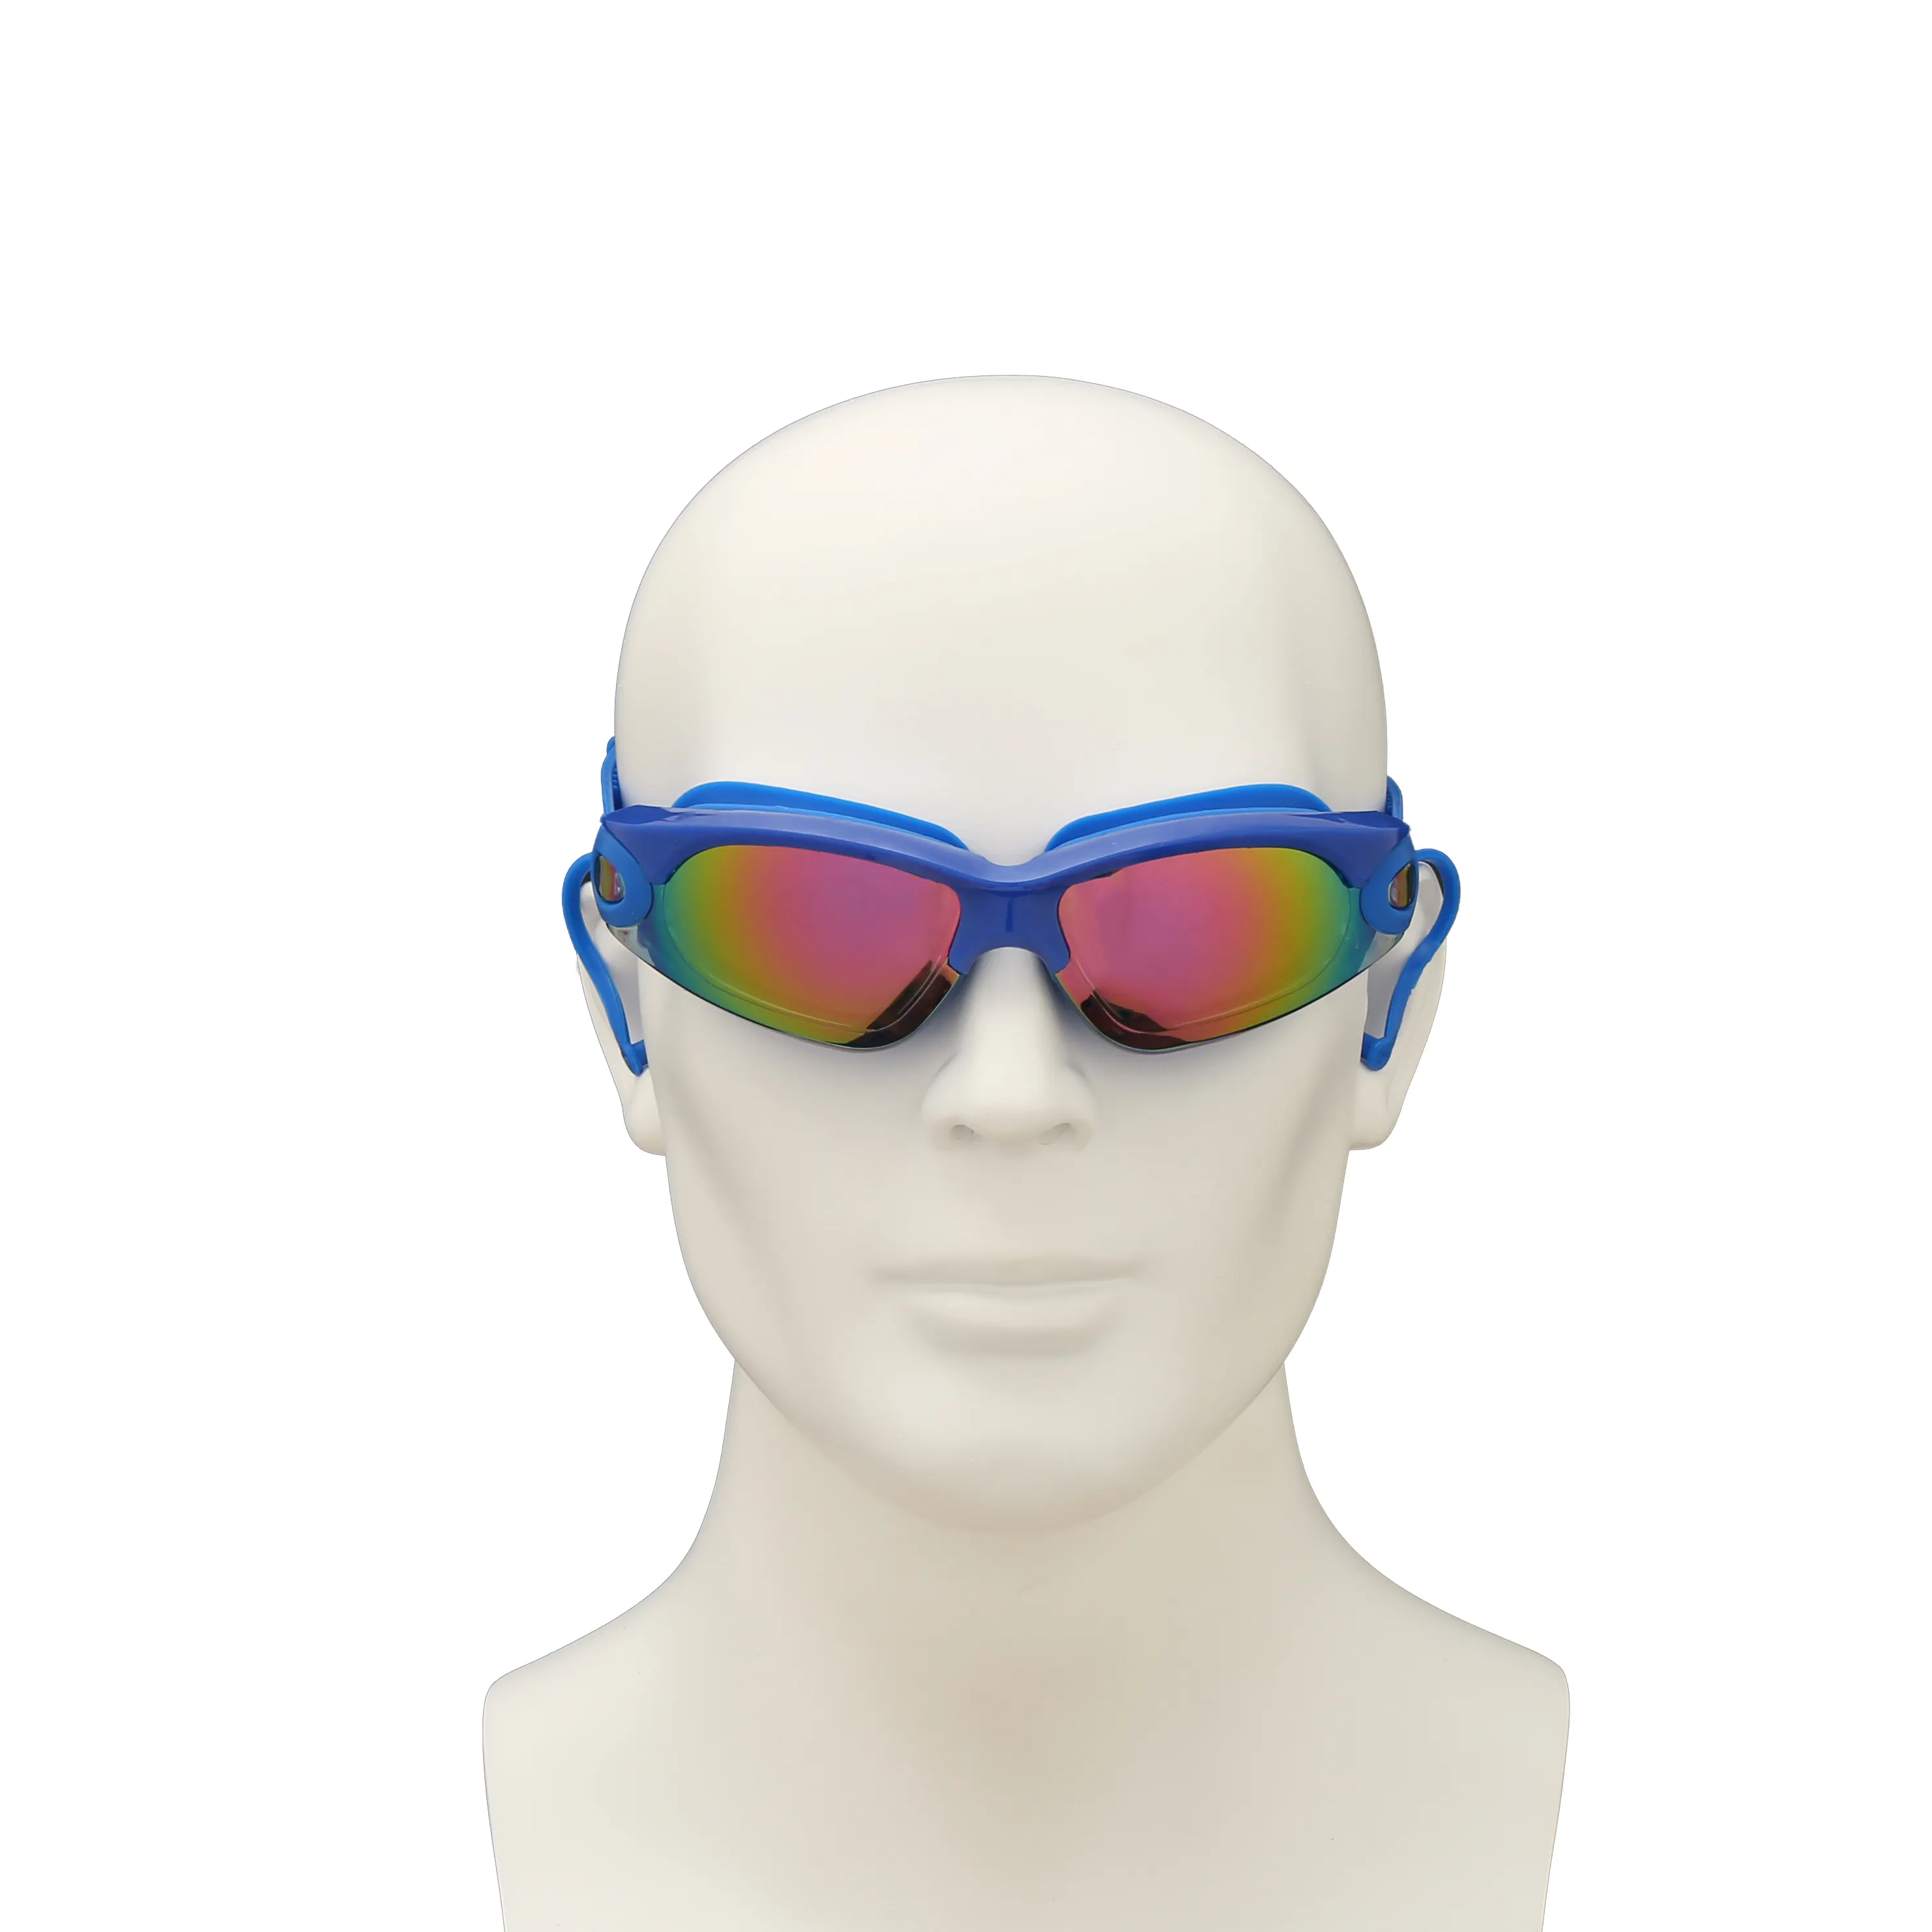 نظارات السلامة المخصصة للرجال, نظارات مقاومة للضباب والأشعة فوق البنفسجية وطلاء السلامة ومضادة للضباب نظارات رياضية للمسابقات